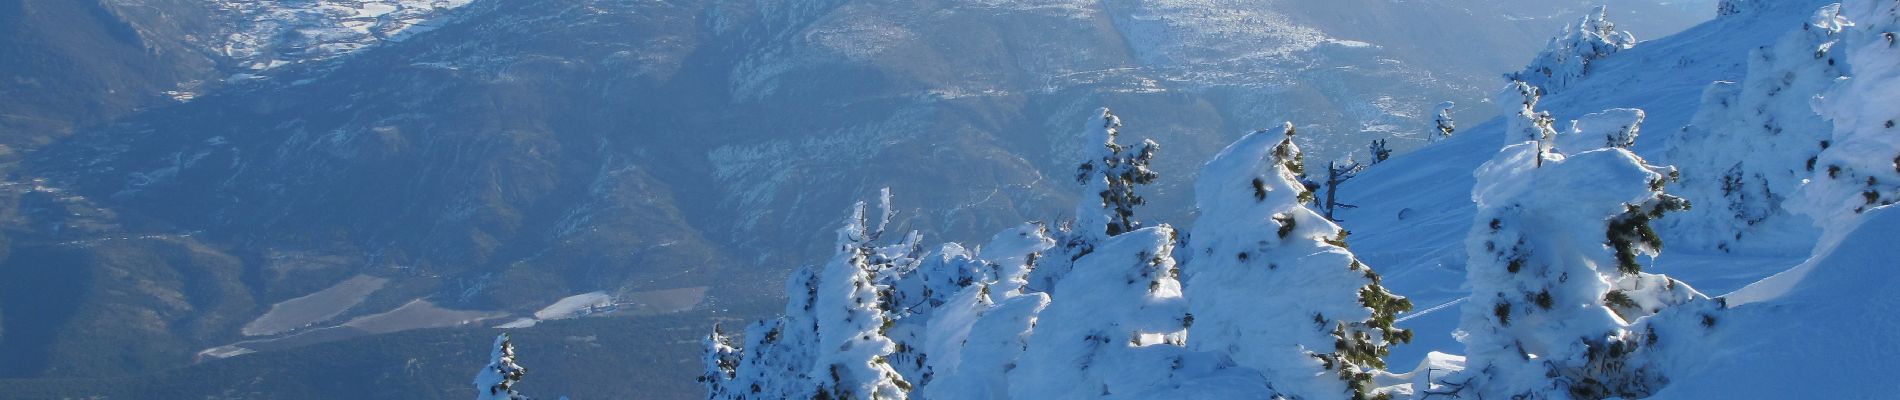 Tour Skiwanderen Beaumont-du-Ventoux - mont ventoux à Ski - Photo